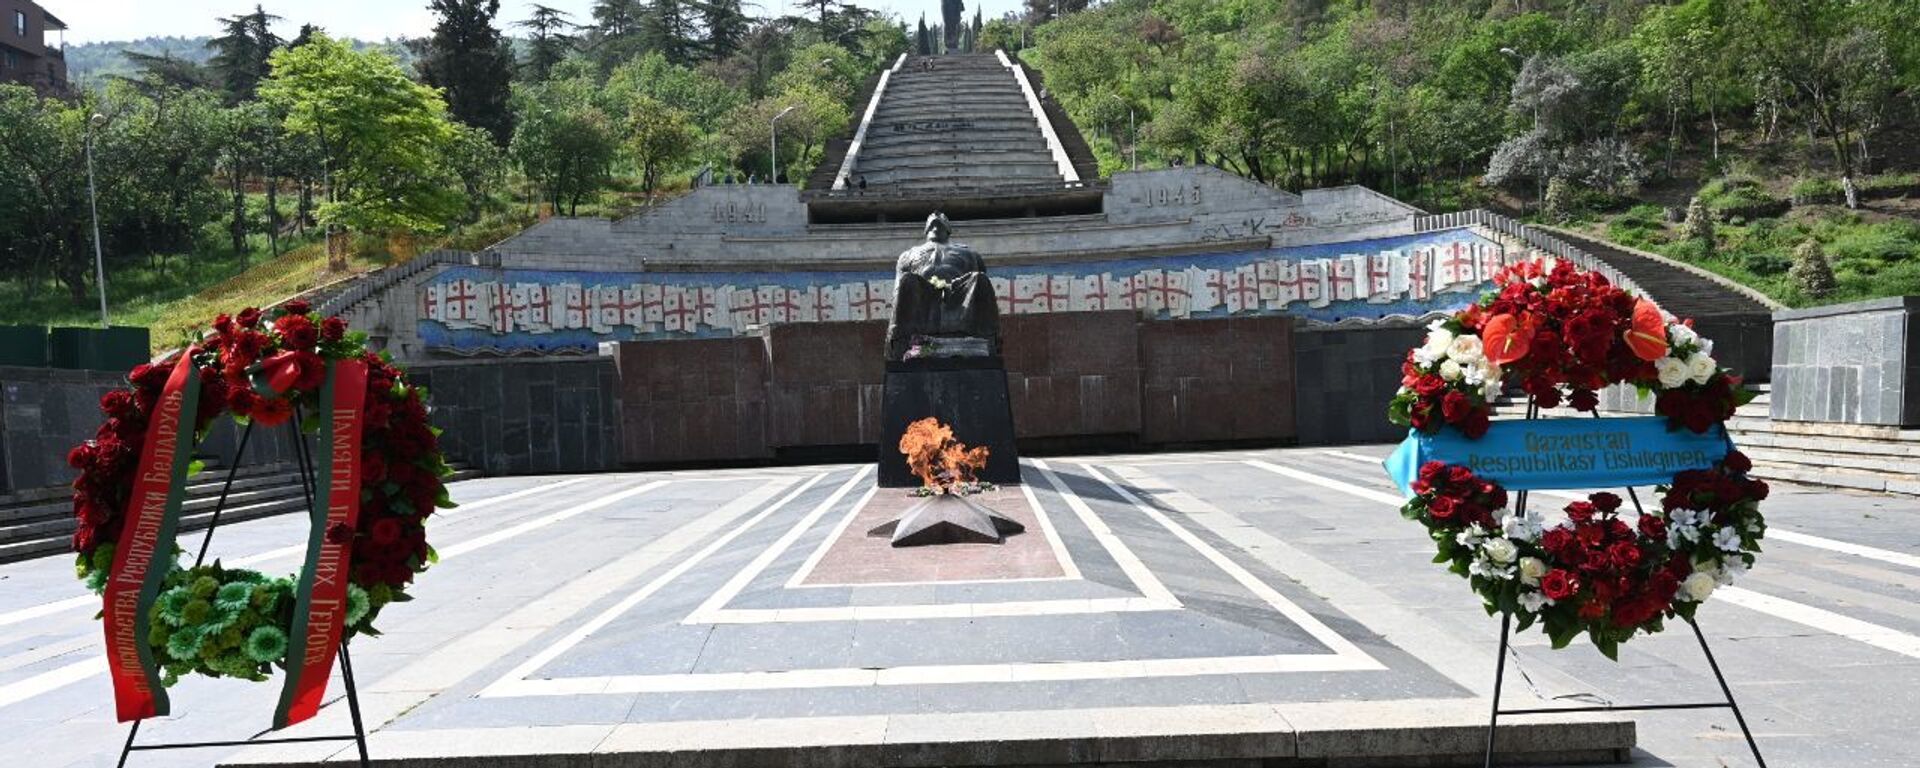 День Победы 9 мая 2021 года. Парк Ваке. Могила Неизвестного солдата и Вечный огонь, венки от посольств - Sputnik Грузия, 1920, 09.05.2021